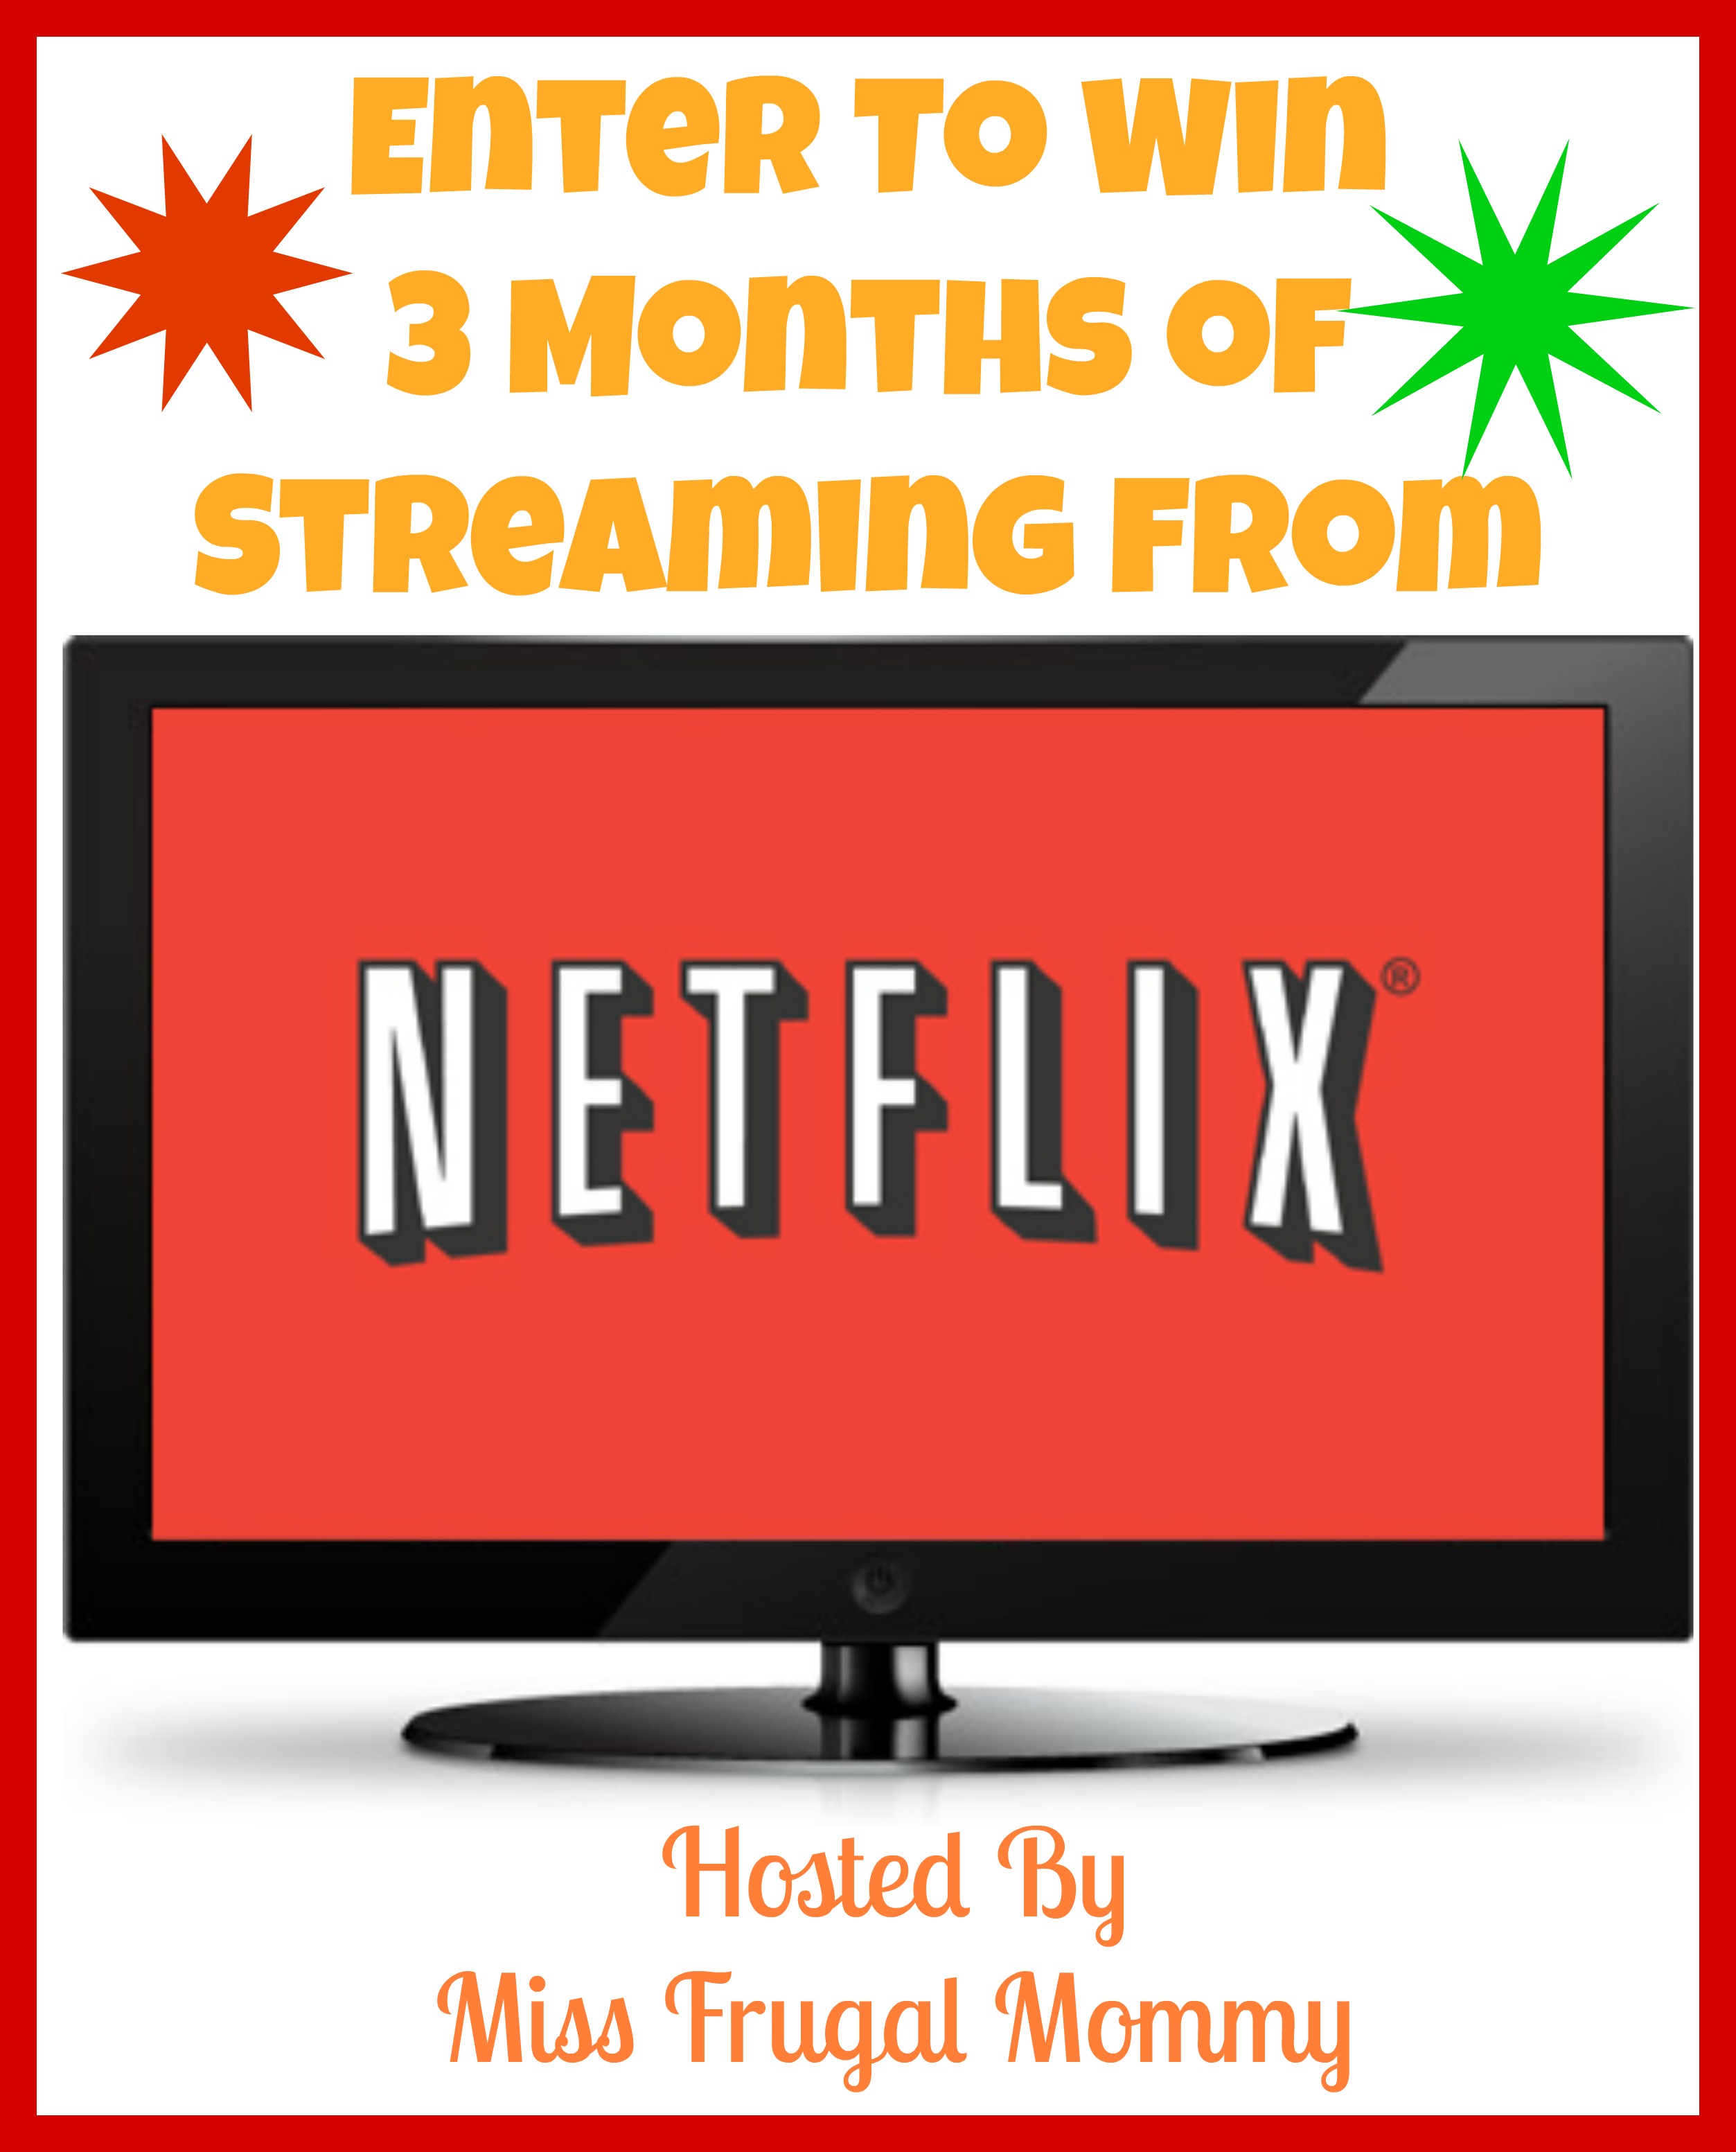 I Didn't Know That!: Top 8 Współdzielenie Kosztów Netflix Of The Decade